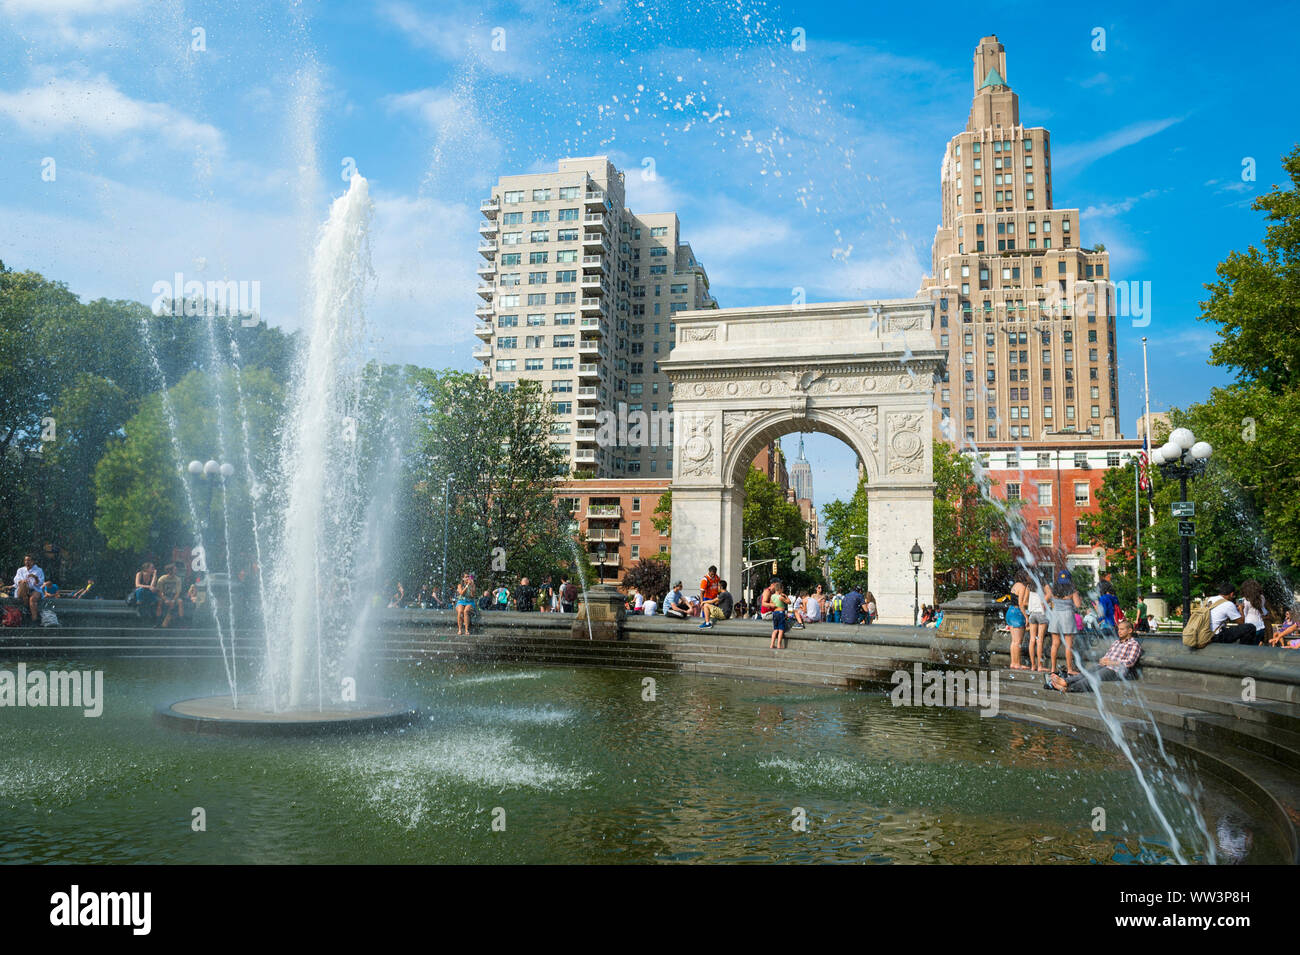 NEW YORK CITY - Agosto 15, 2017: persone rinfrescarvi in una calda giornata estiva al Washington Square Park fontana, spostato nel 2009 per allinearsi con l'arch. Foto Stock